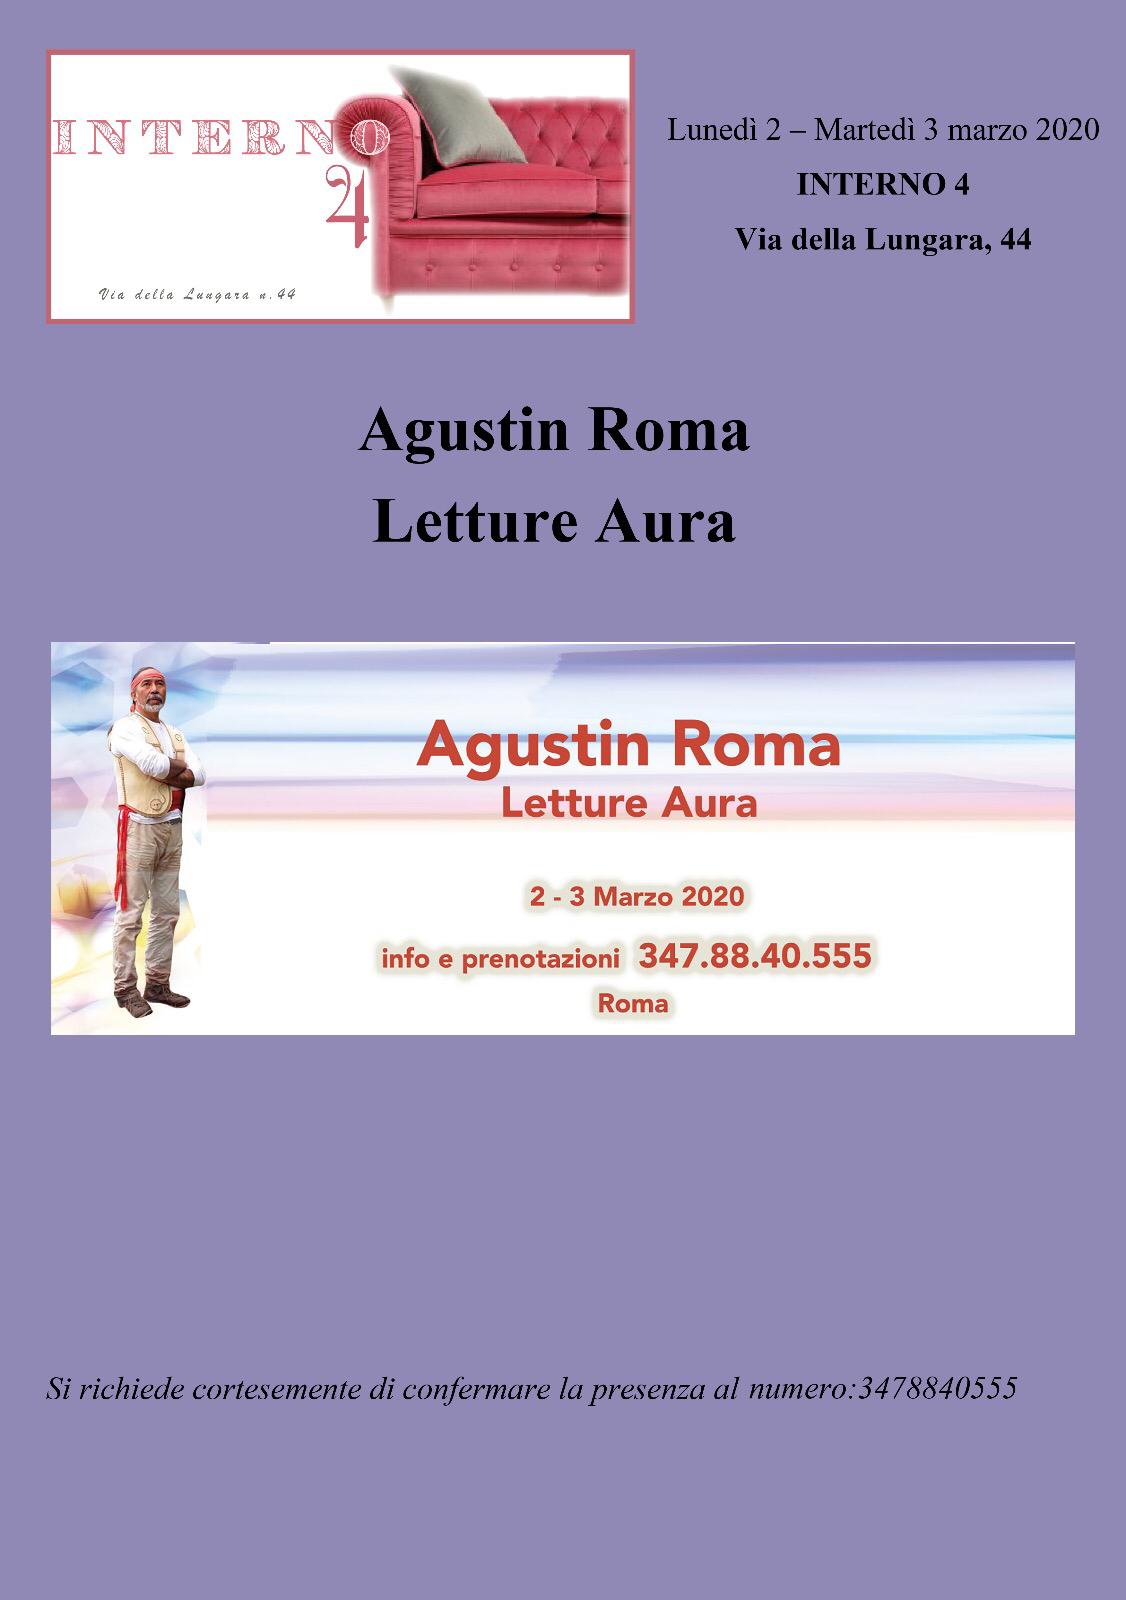 Agustin Roma e le letture Aura ad Interno 4